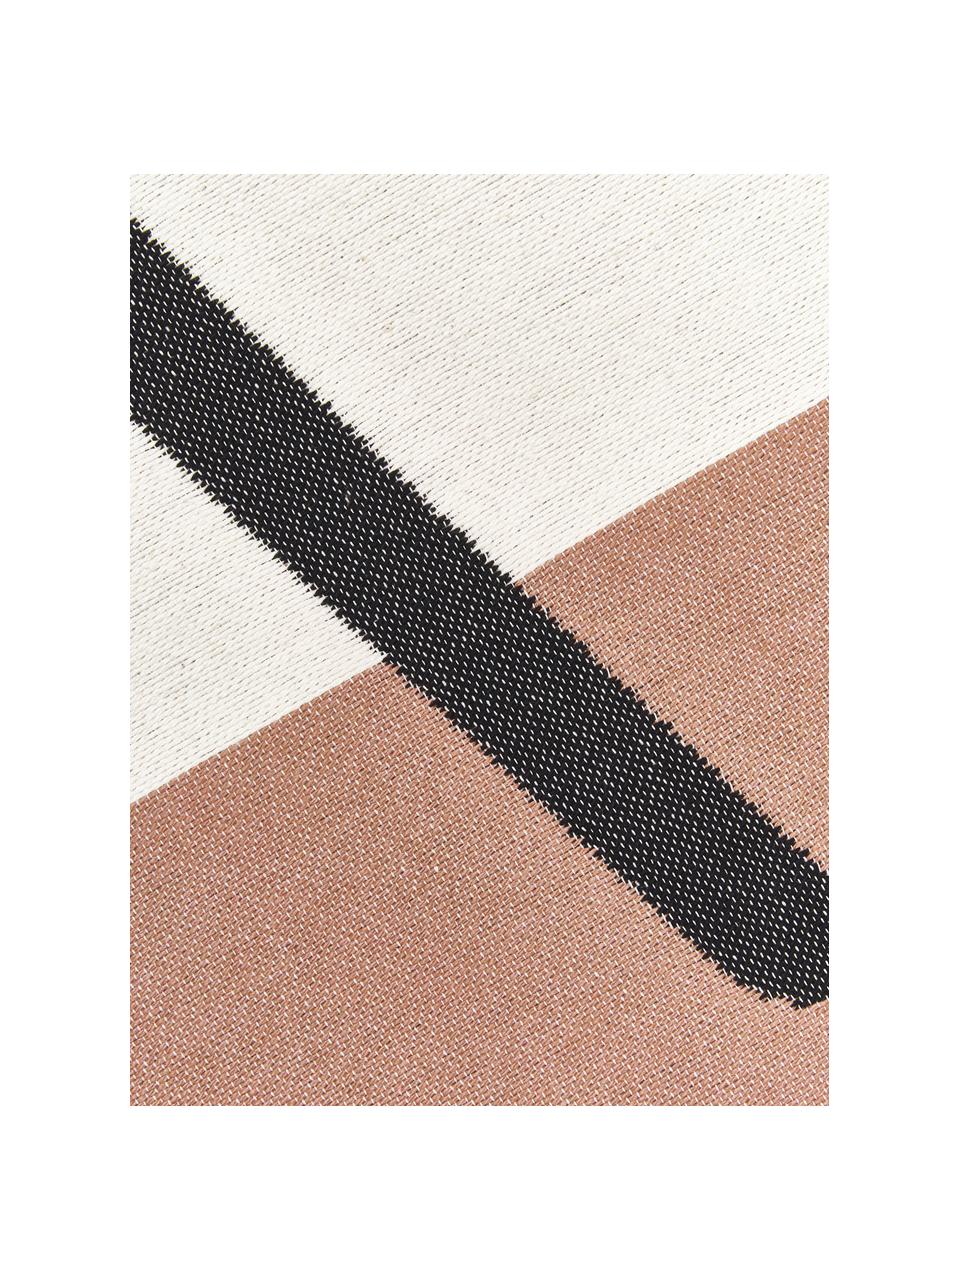 Teppich Goliath Gesicht mit Fransen und geometrischem Muster, 150x200cm, 100% recycelte Baumwolle, Mehrfarbig, B 150 x L 200 cm (Größe S)